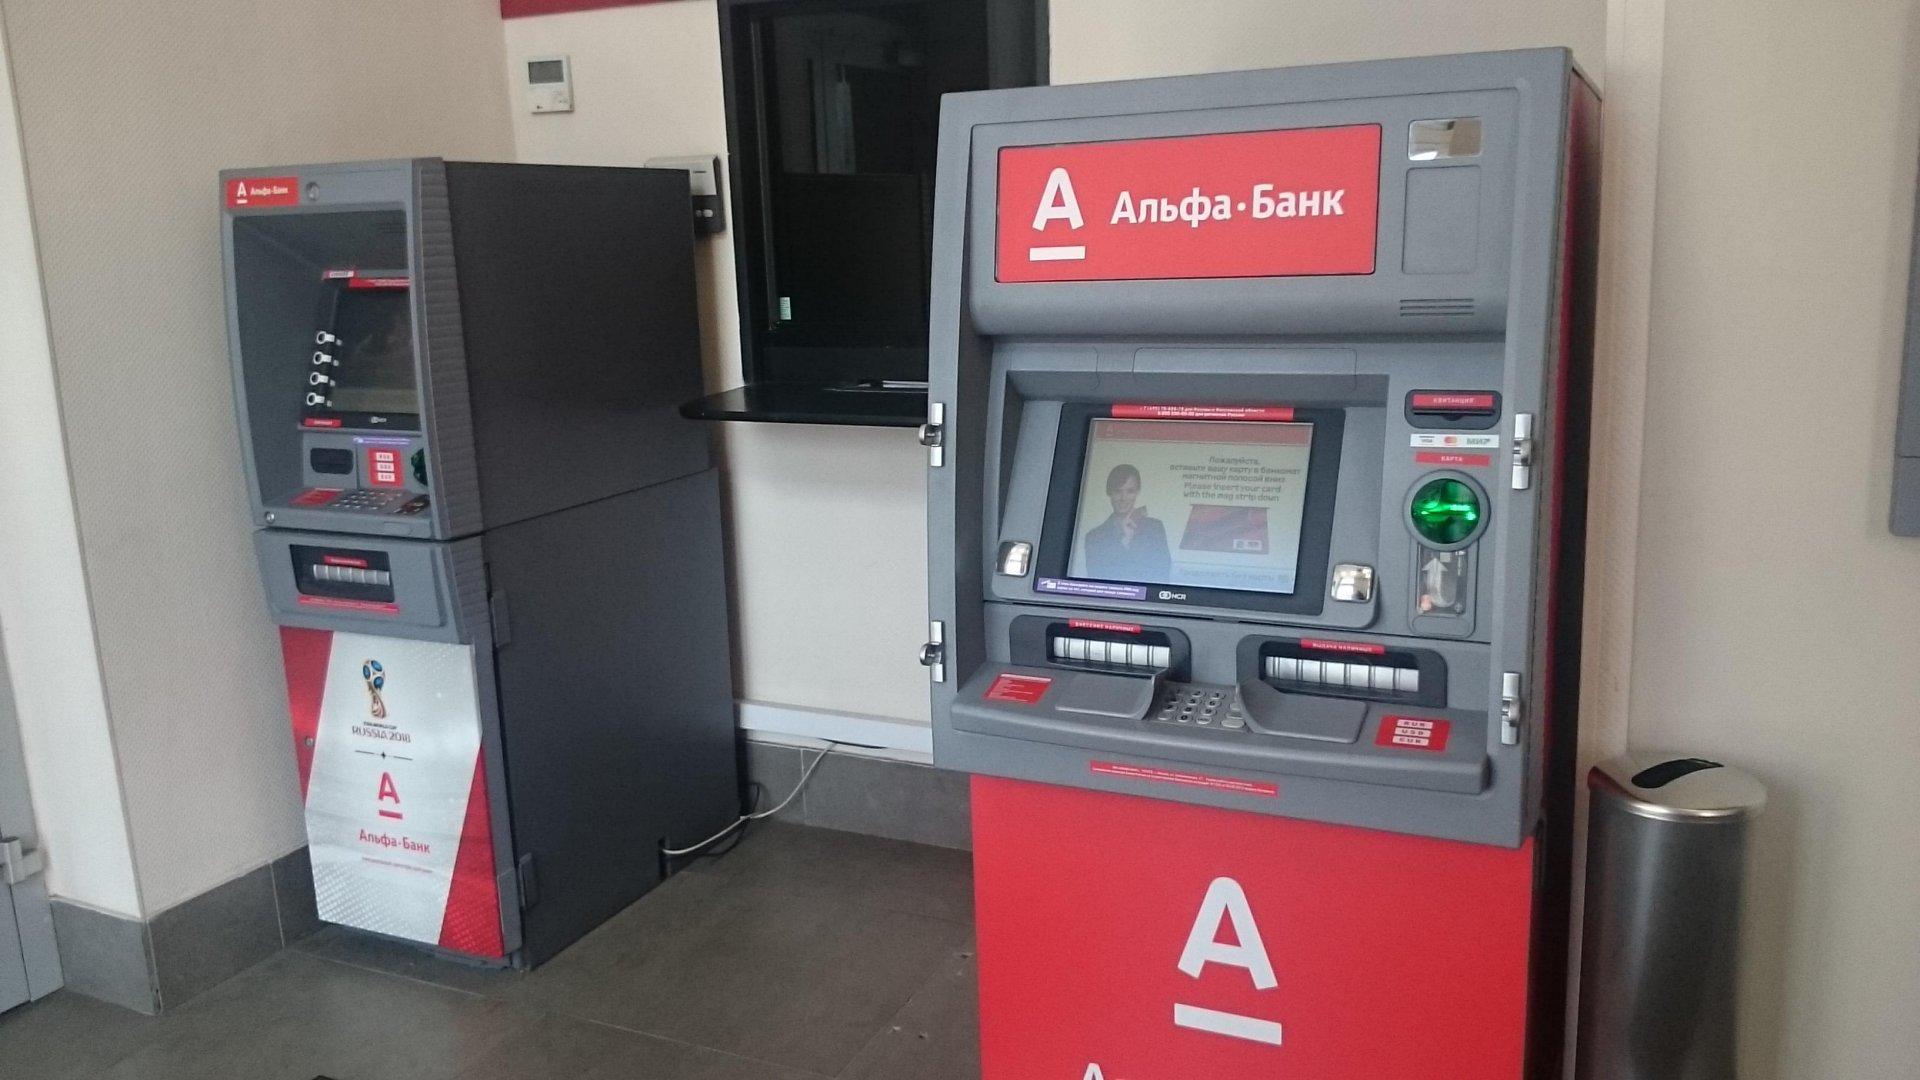 Альфа банк в области банкоматы